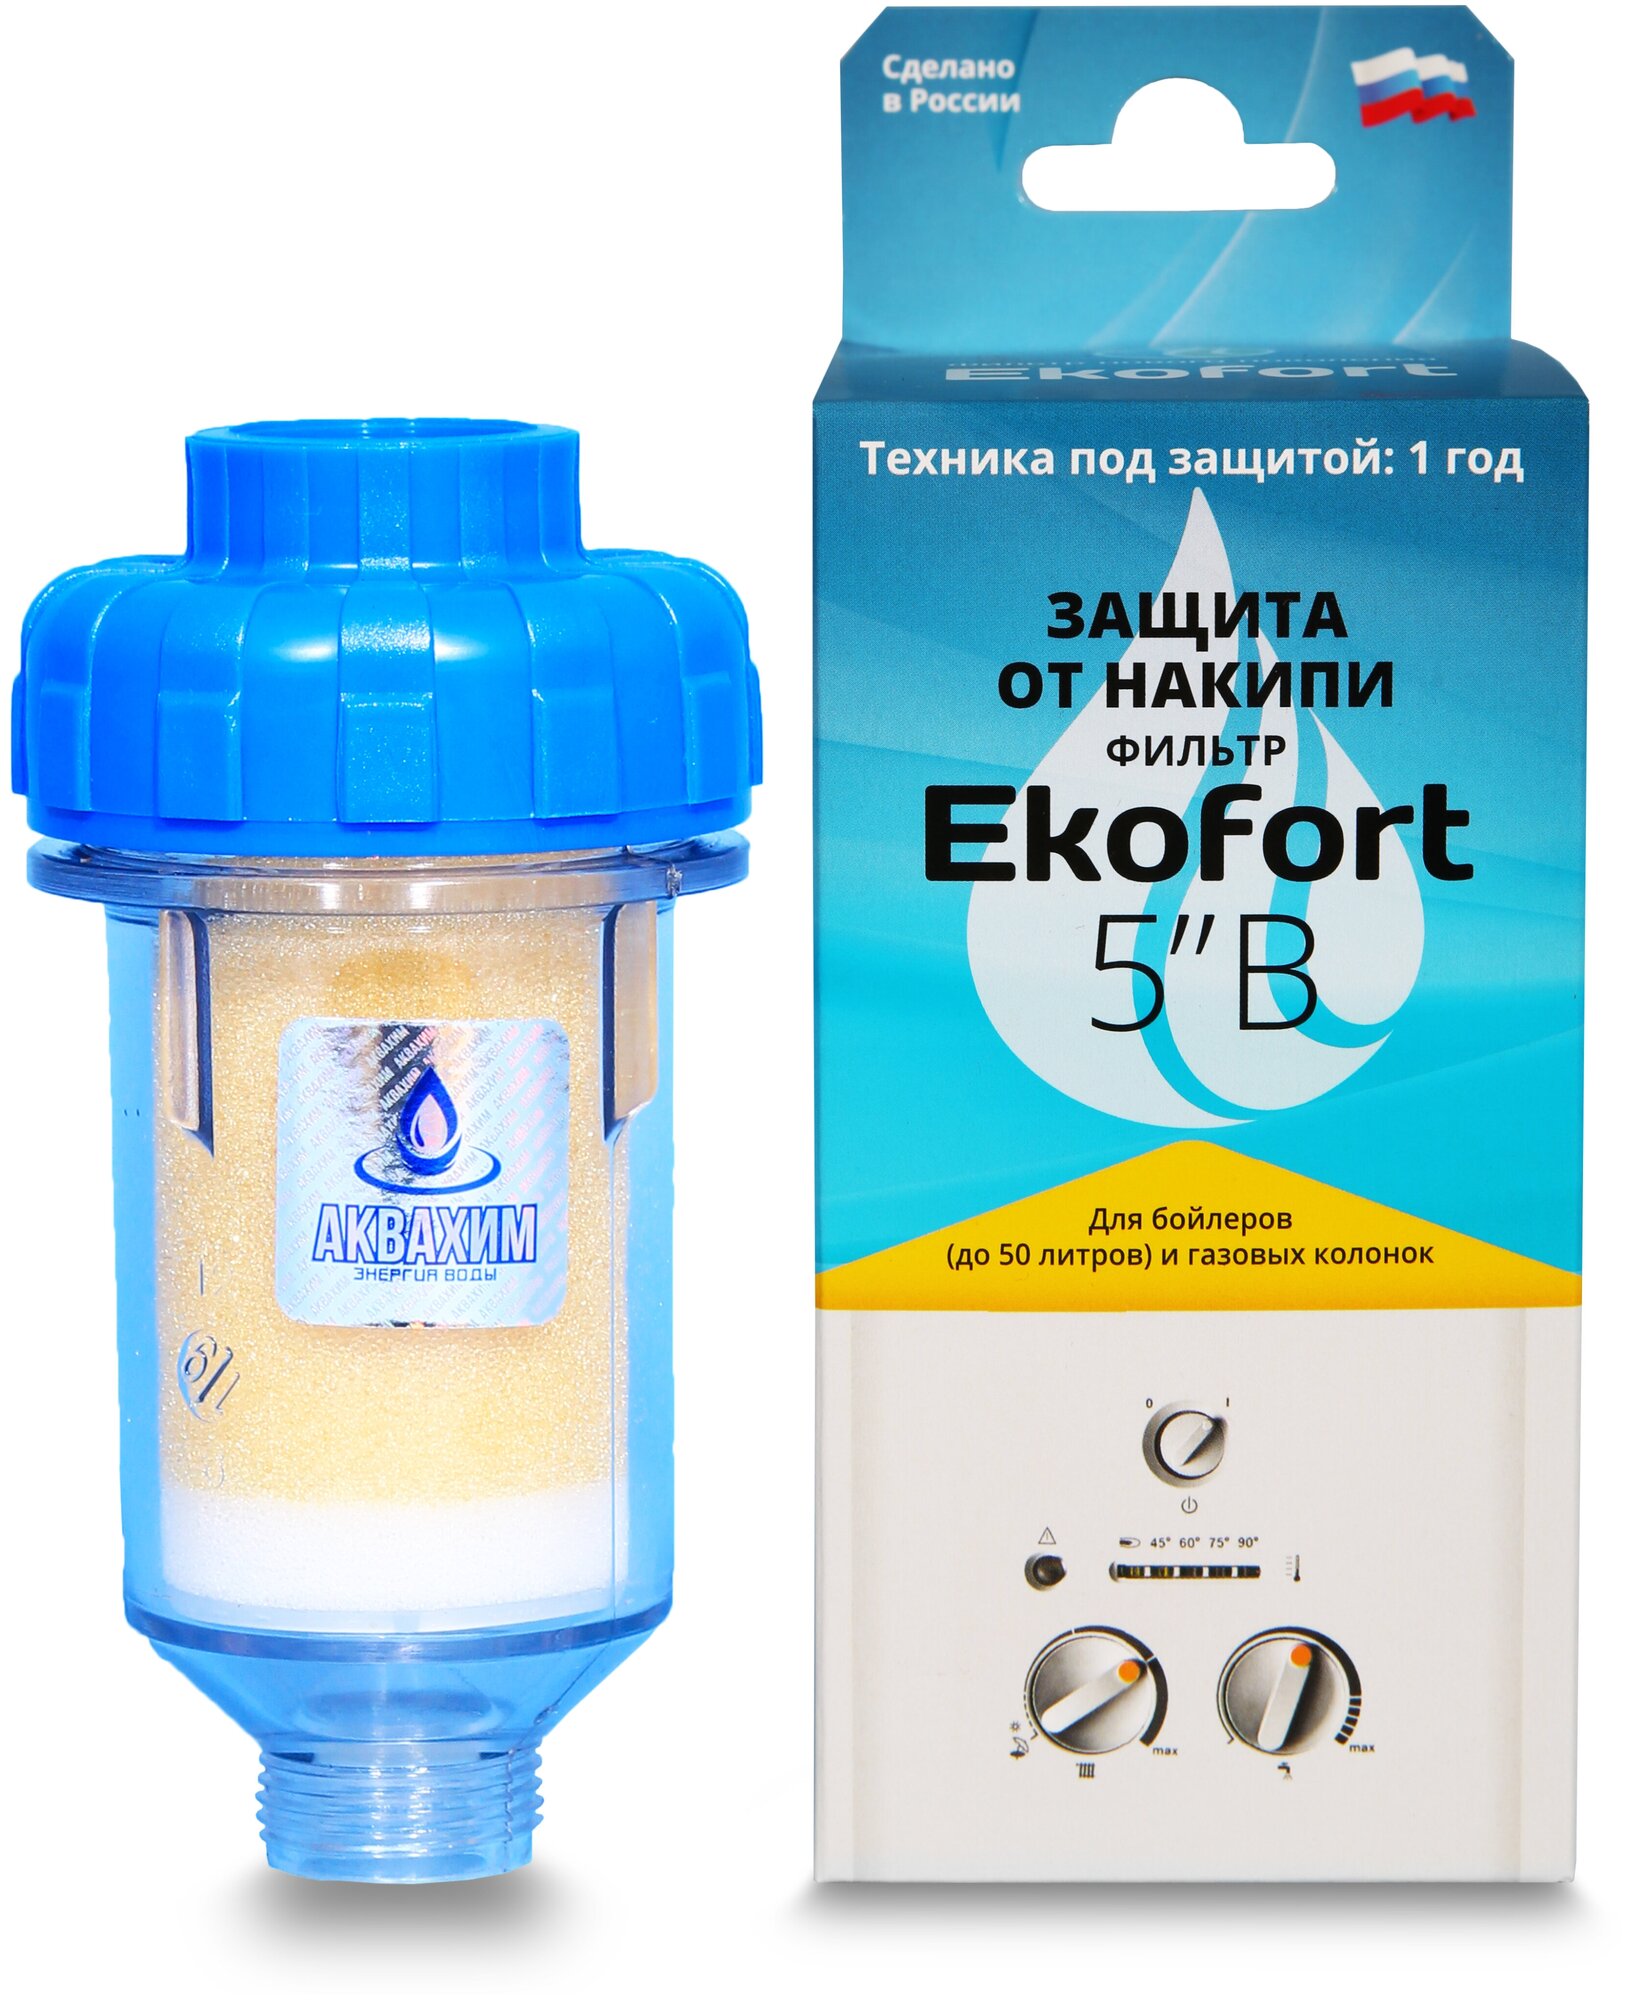 Фильтр Ekofort 5" B (1/2") для защиты от накипи газовых и электрических водонагревателей, бойлеров